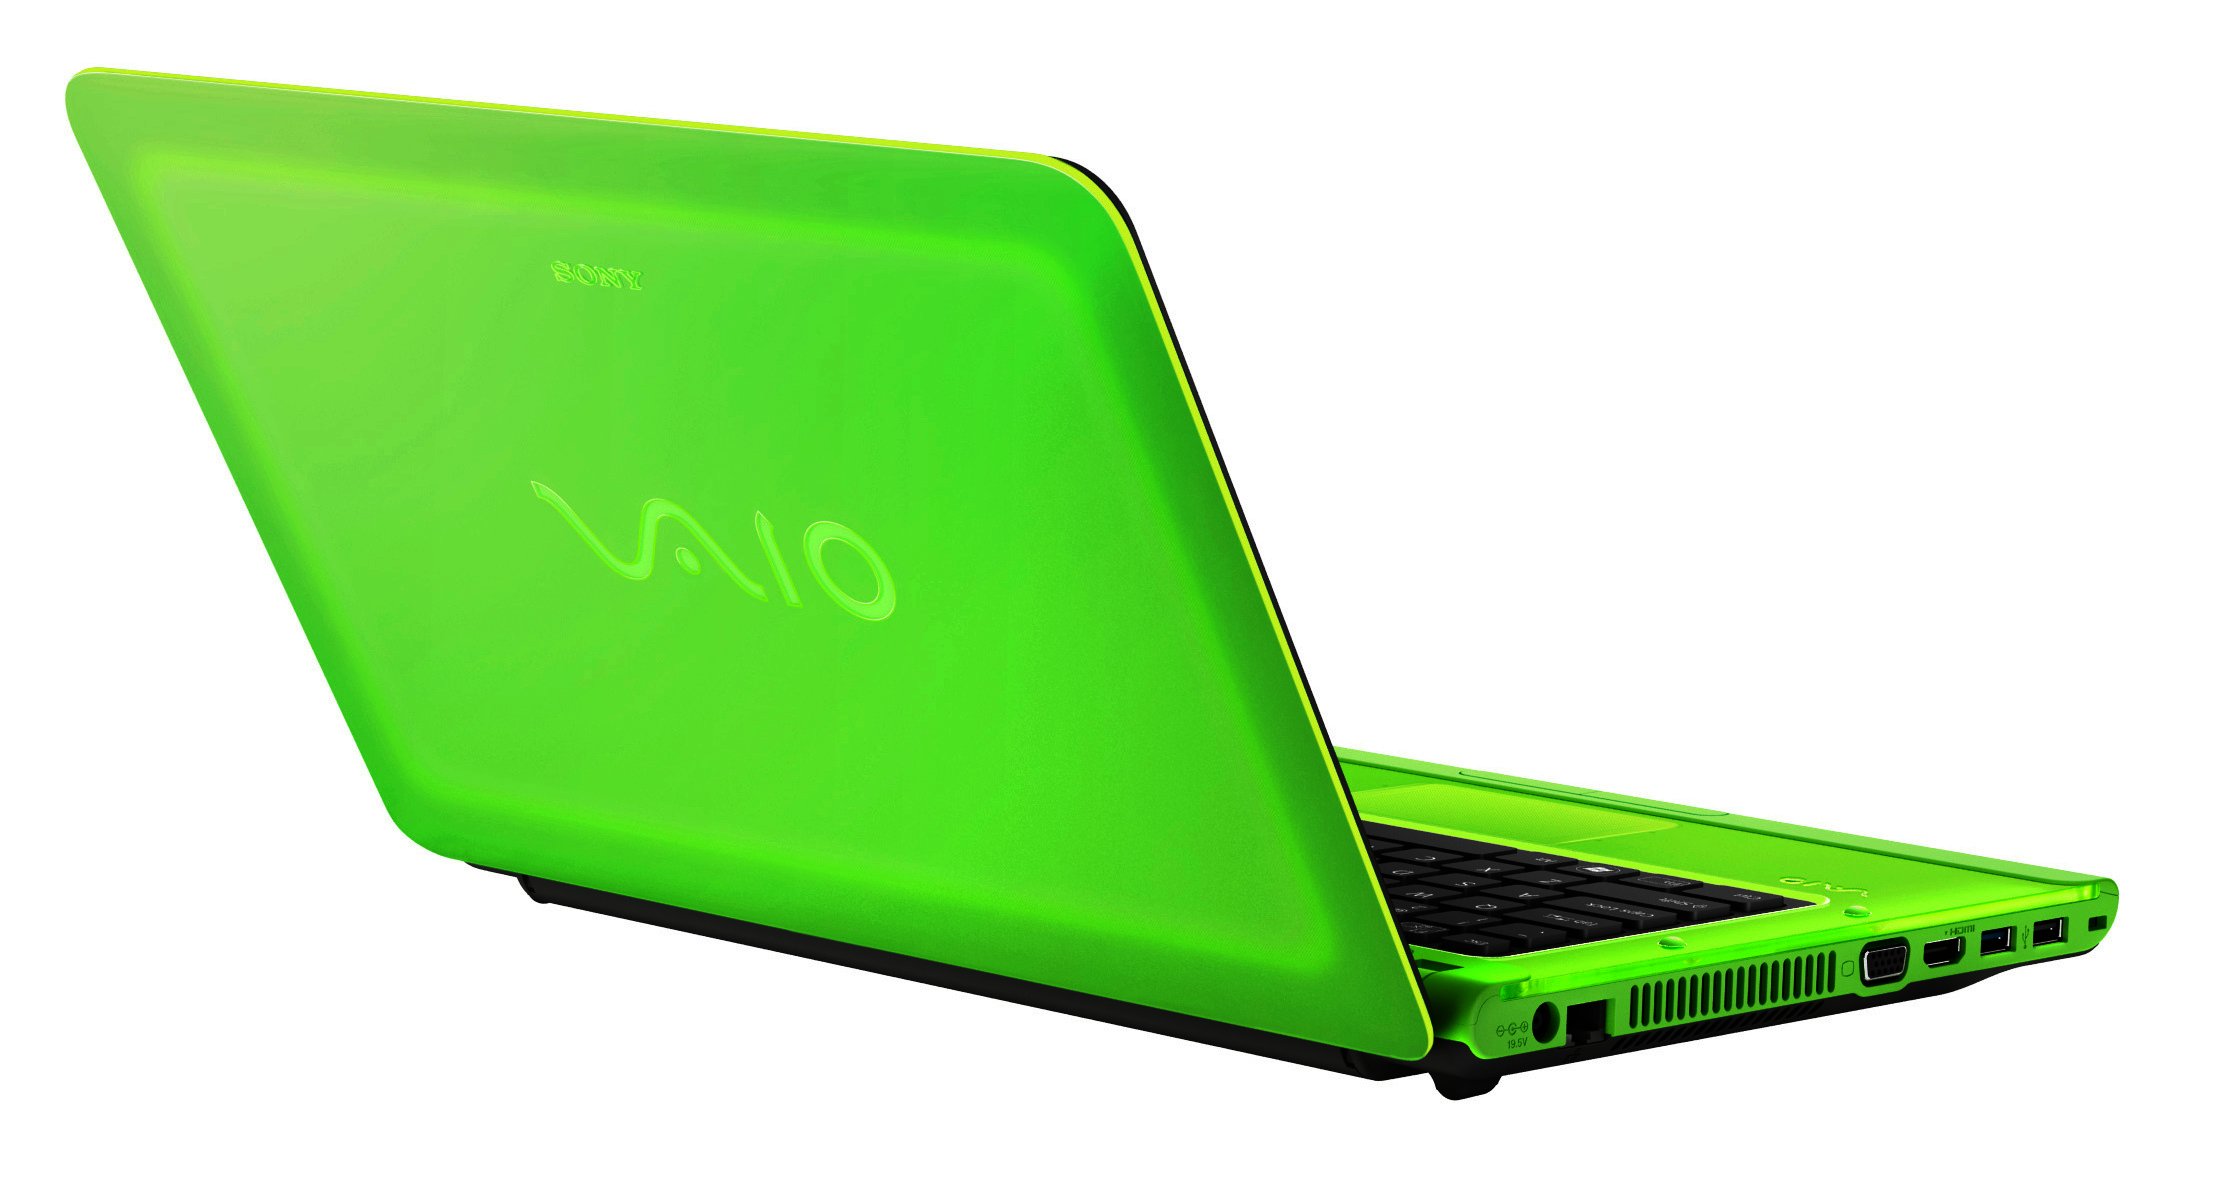 Sony unveils new VAIO C Series notebooks